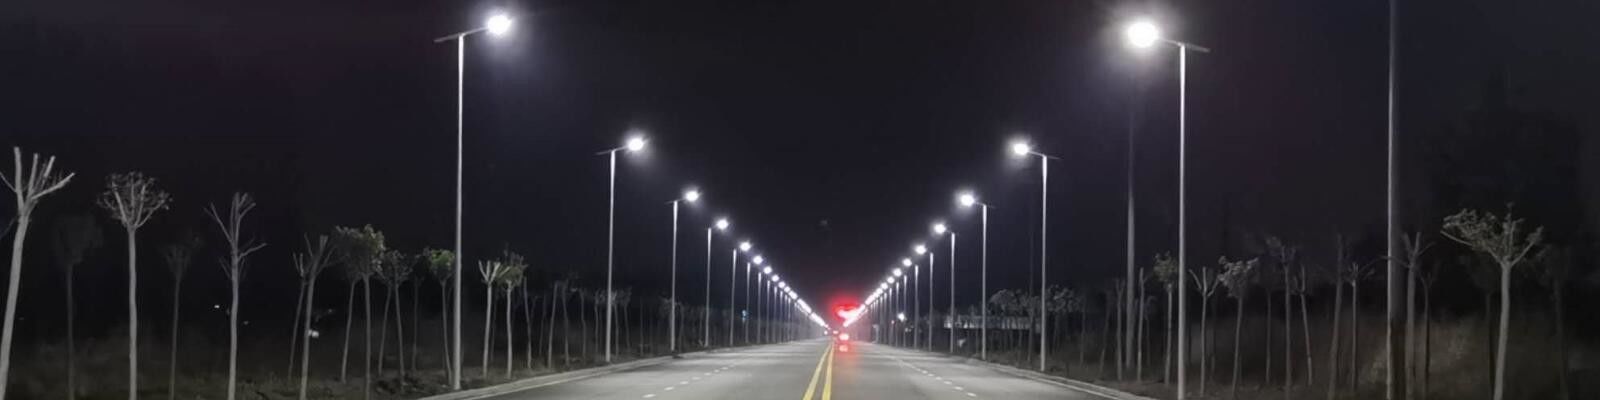 LED-Straßenlaterneim Freien